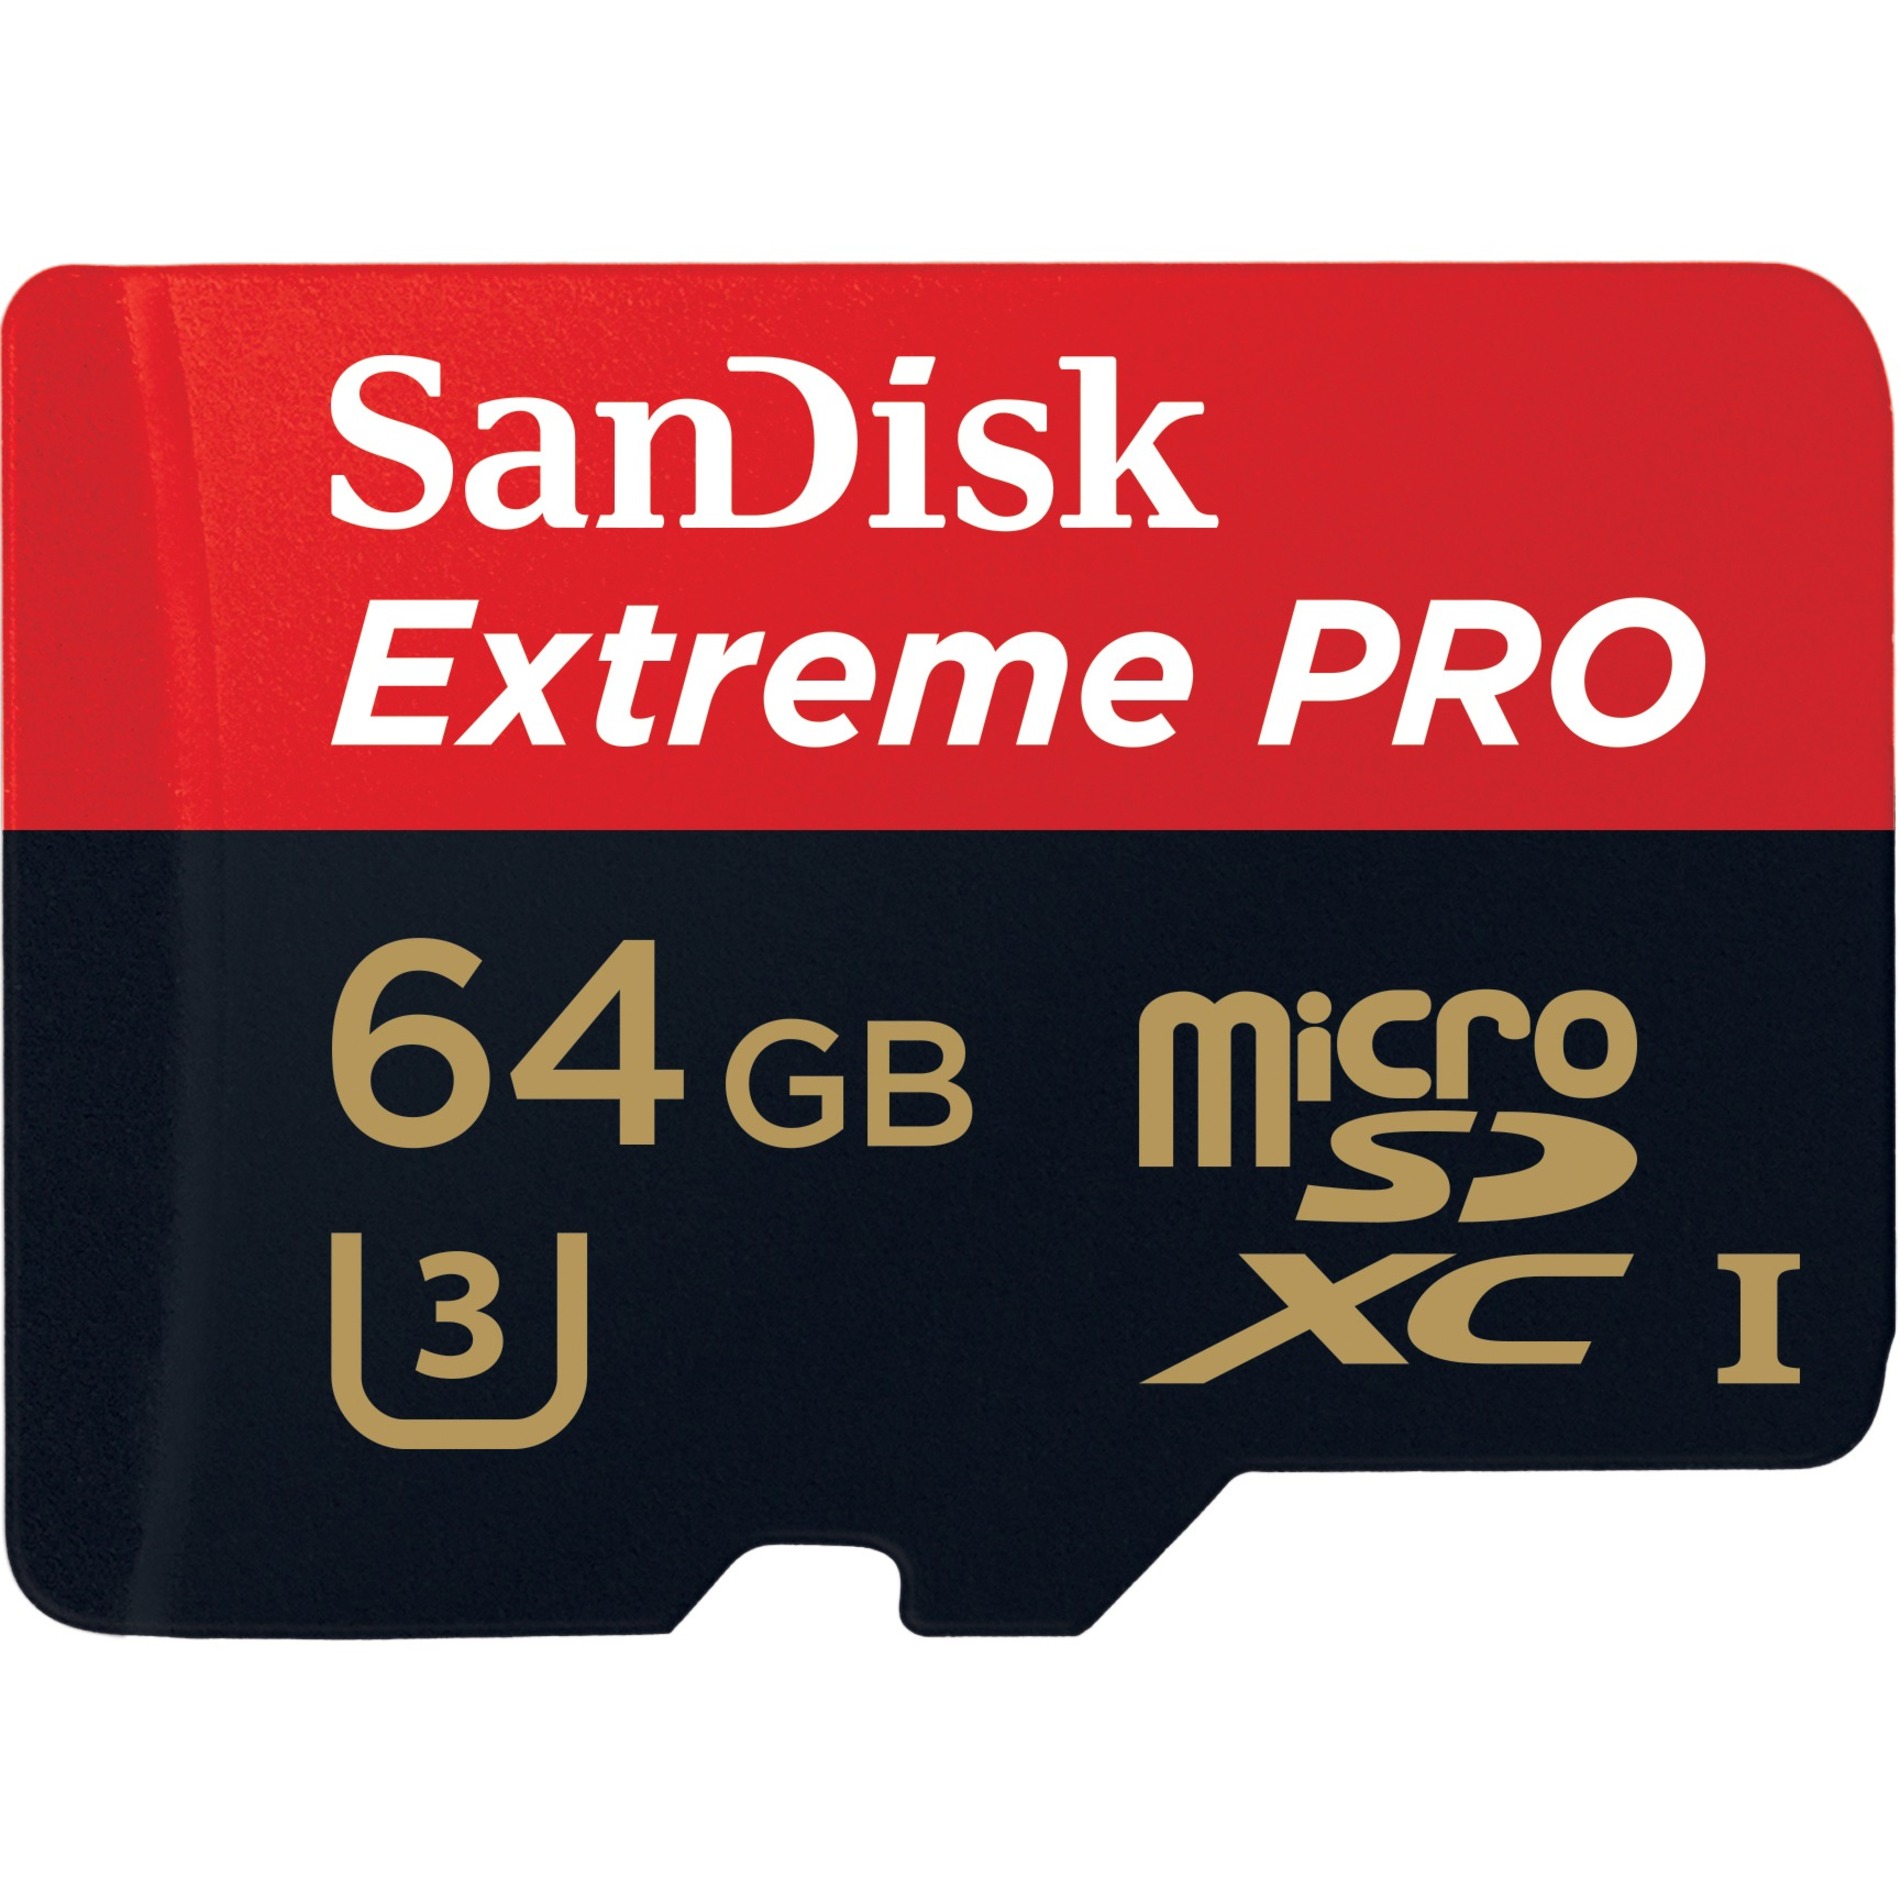 SanDisk Extreme Pro 64 GB Class 10/UHS-I microSDXC - image 1 of 2